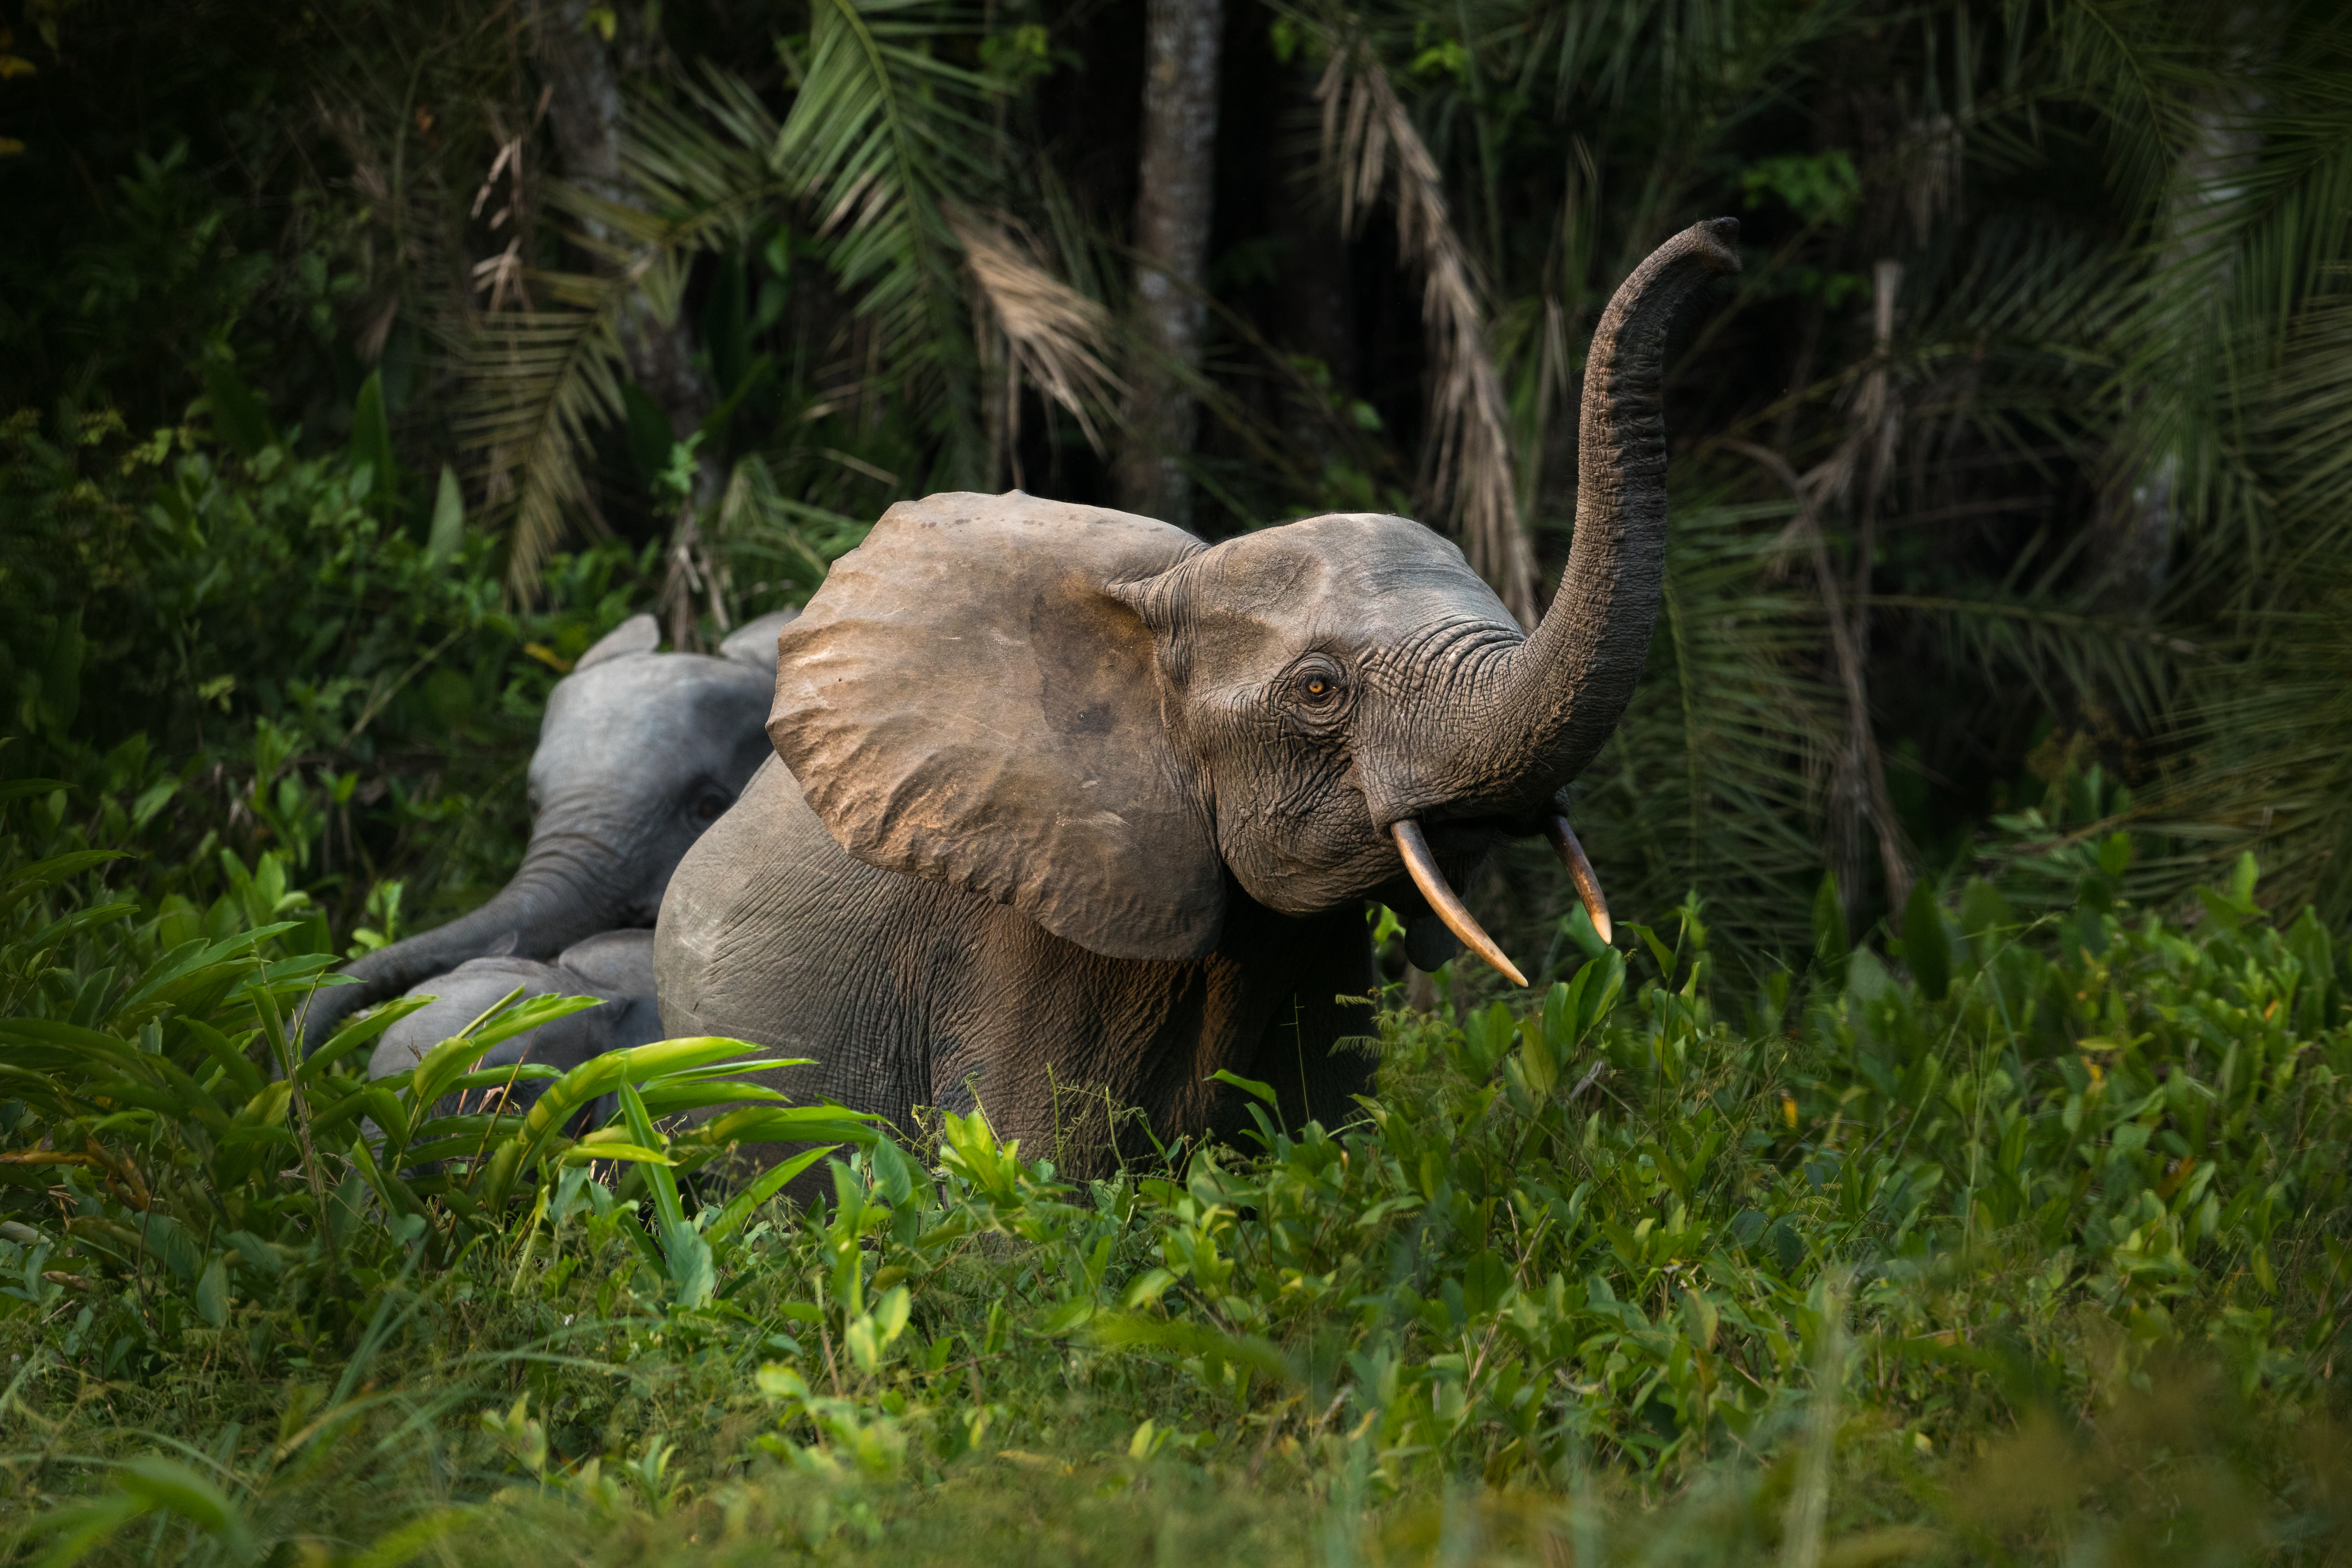 Odzala Forest Elephants